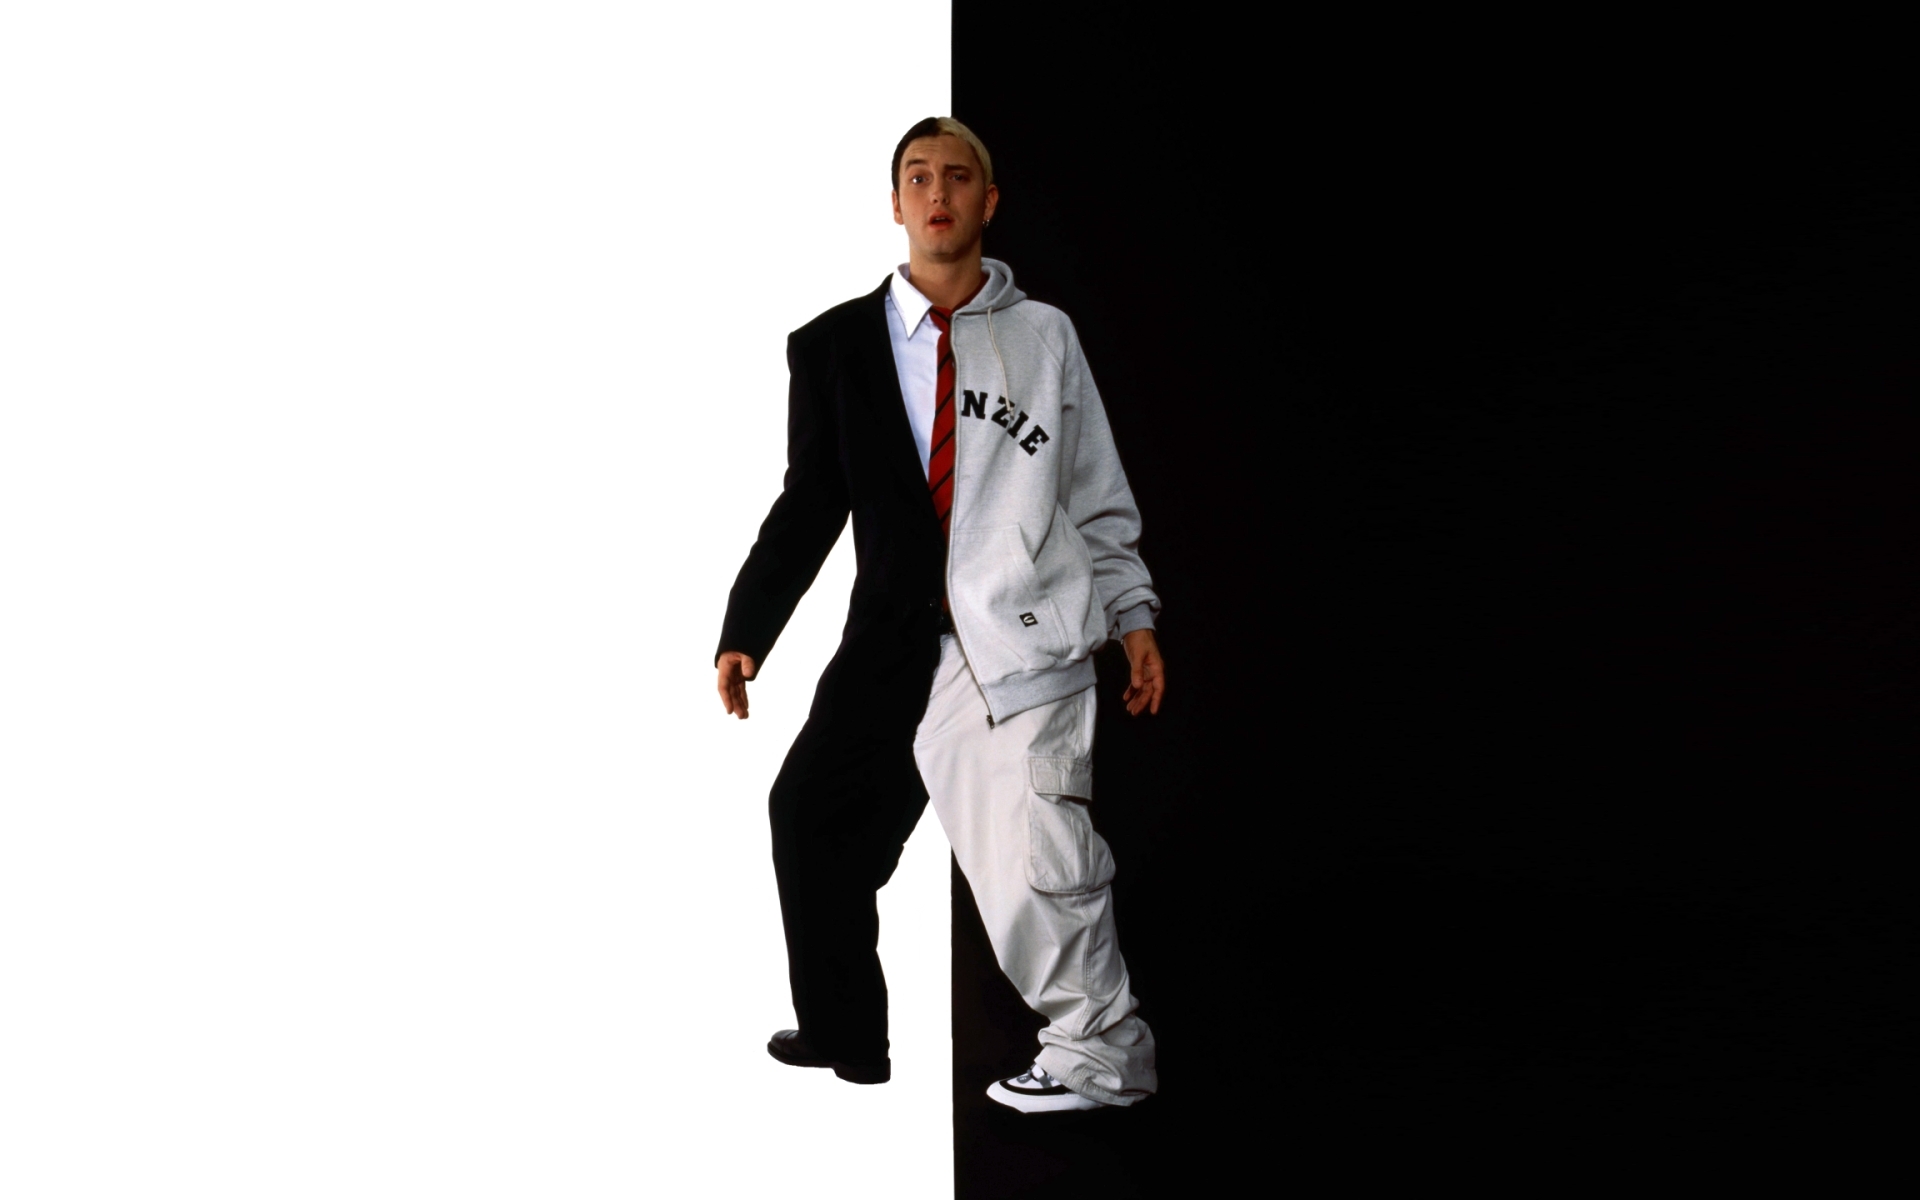 Fondos de Pantalla Eminem, Ropa Formal, Data, Prendas de Vestir Exteriores,  Uniforme, Imágenes y Fotos Gratis